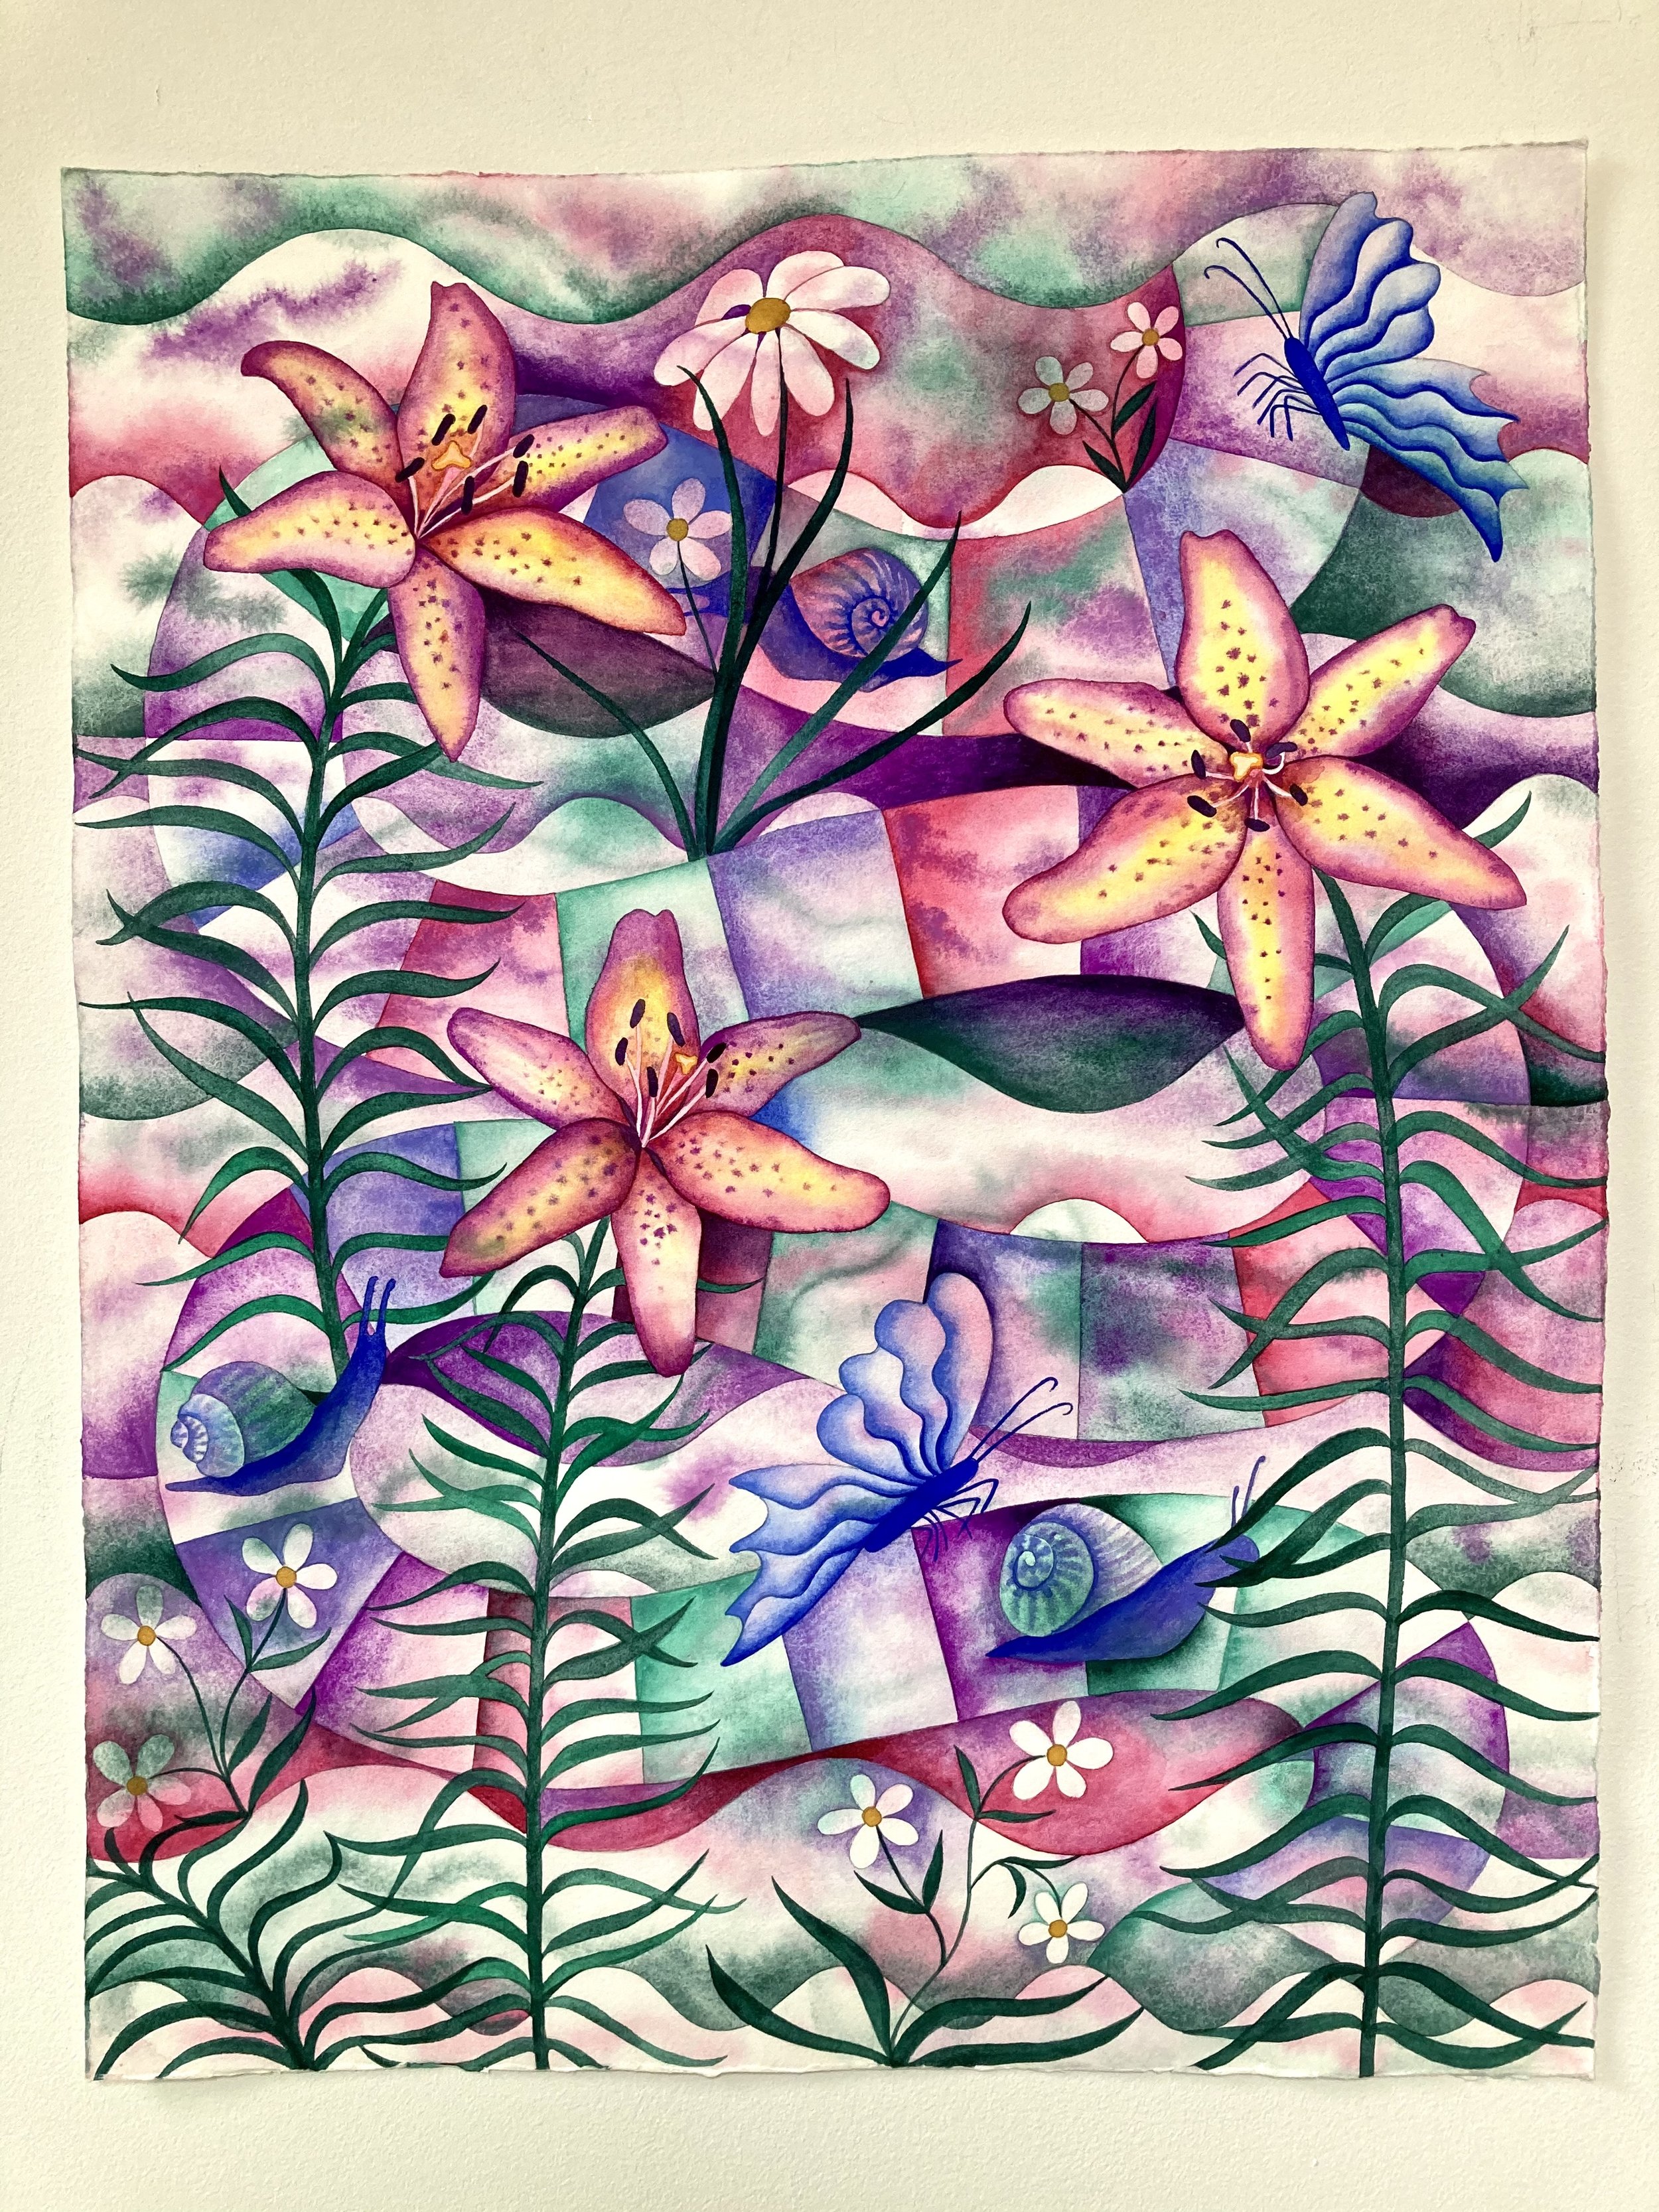 Erika Somogyi, "Secret Garden," watercolor on paper 20in x 16in, 2022.